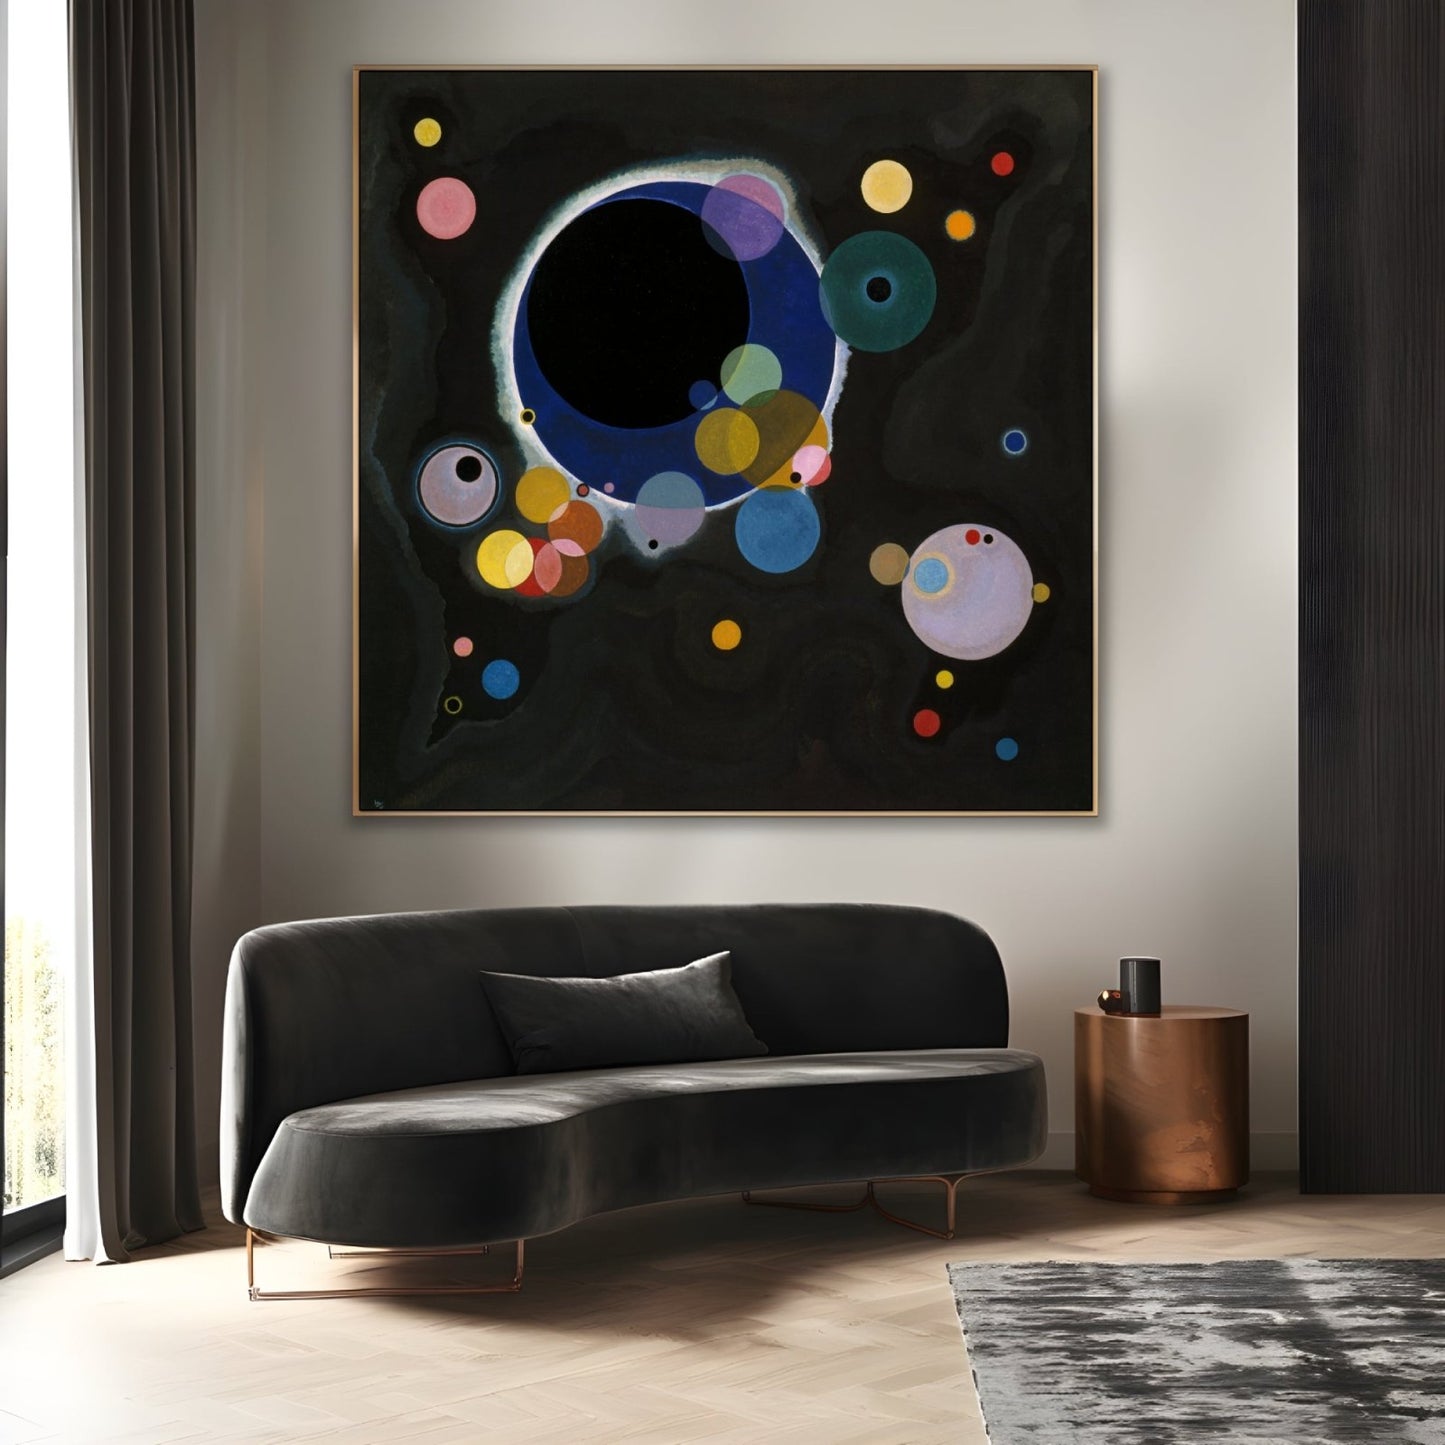 Cercuri diferite - Wassily Kandinsky